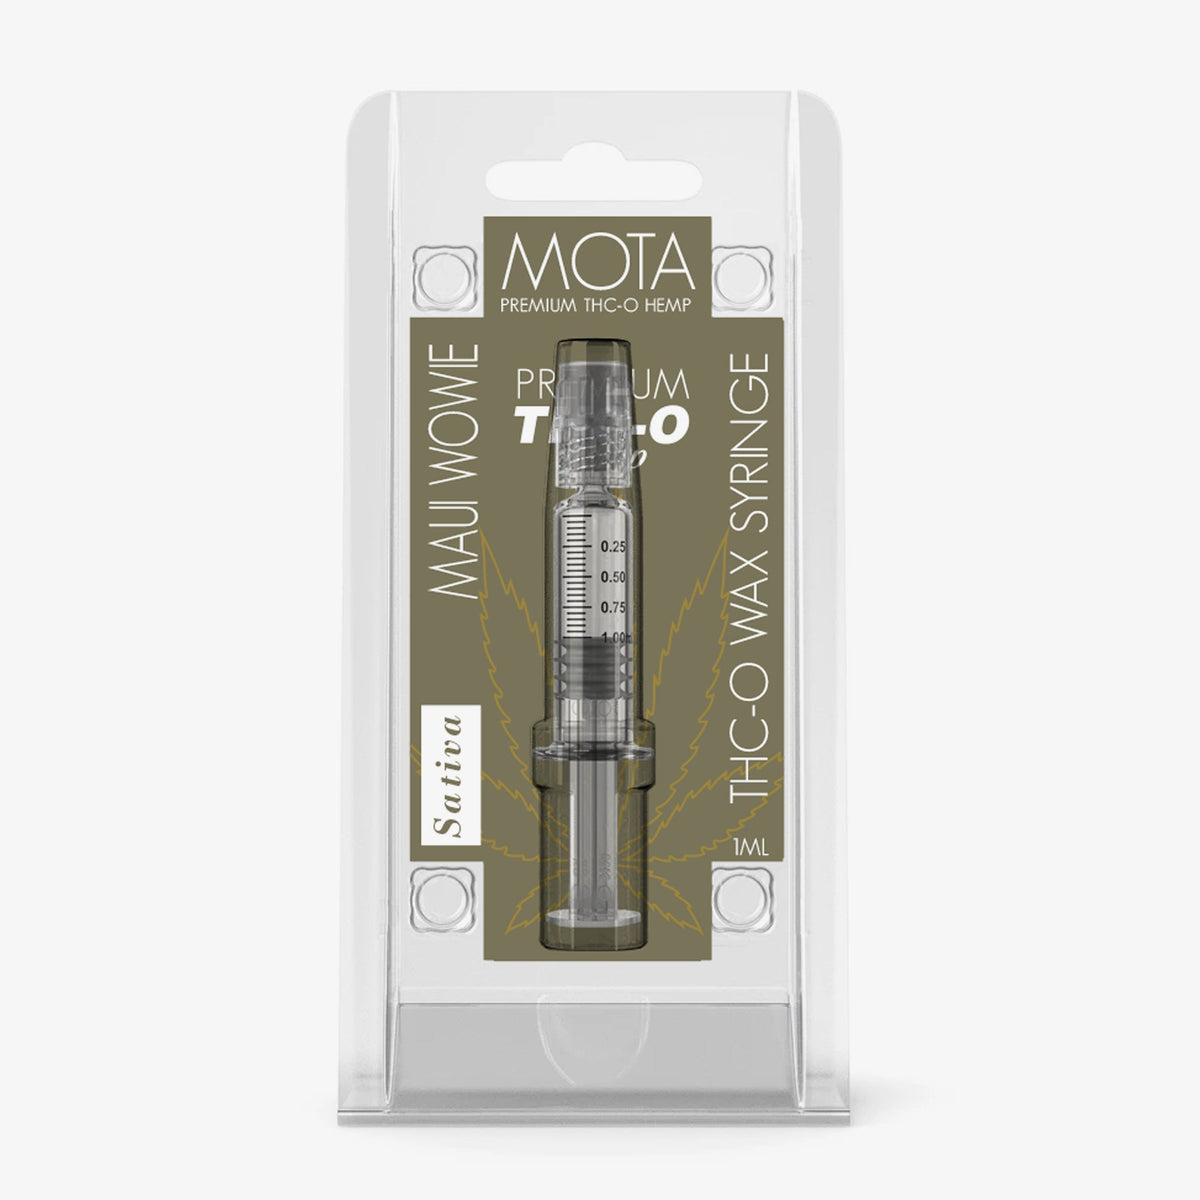 MOTA THC-O Wax Syringe Maui Wowie